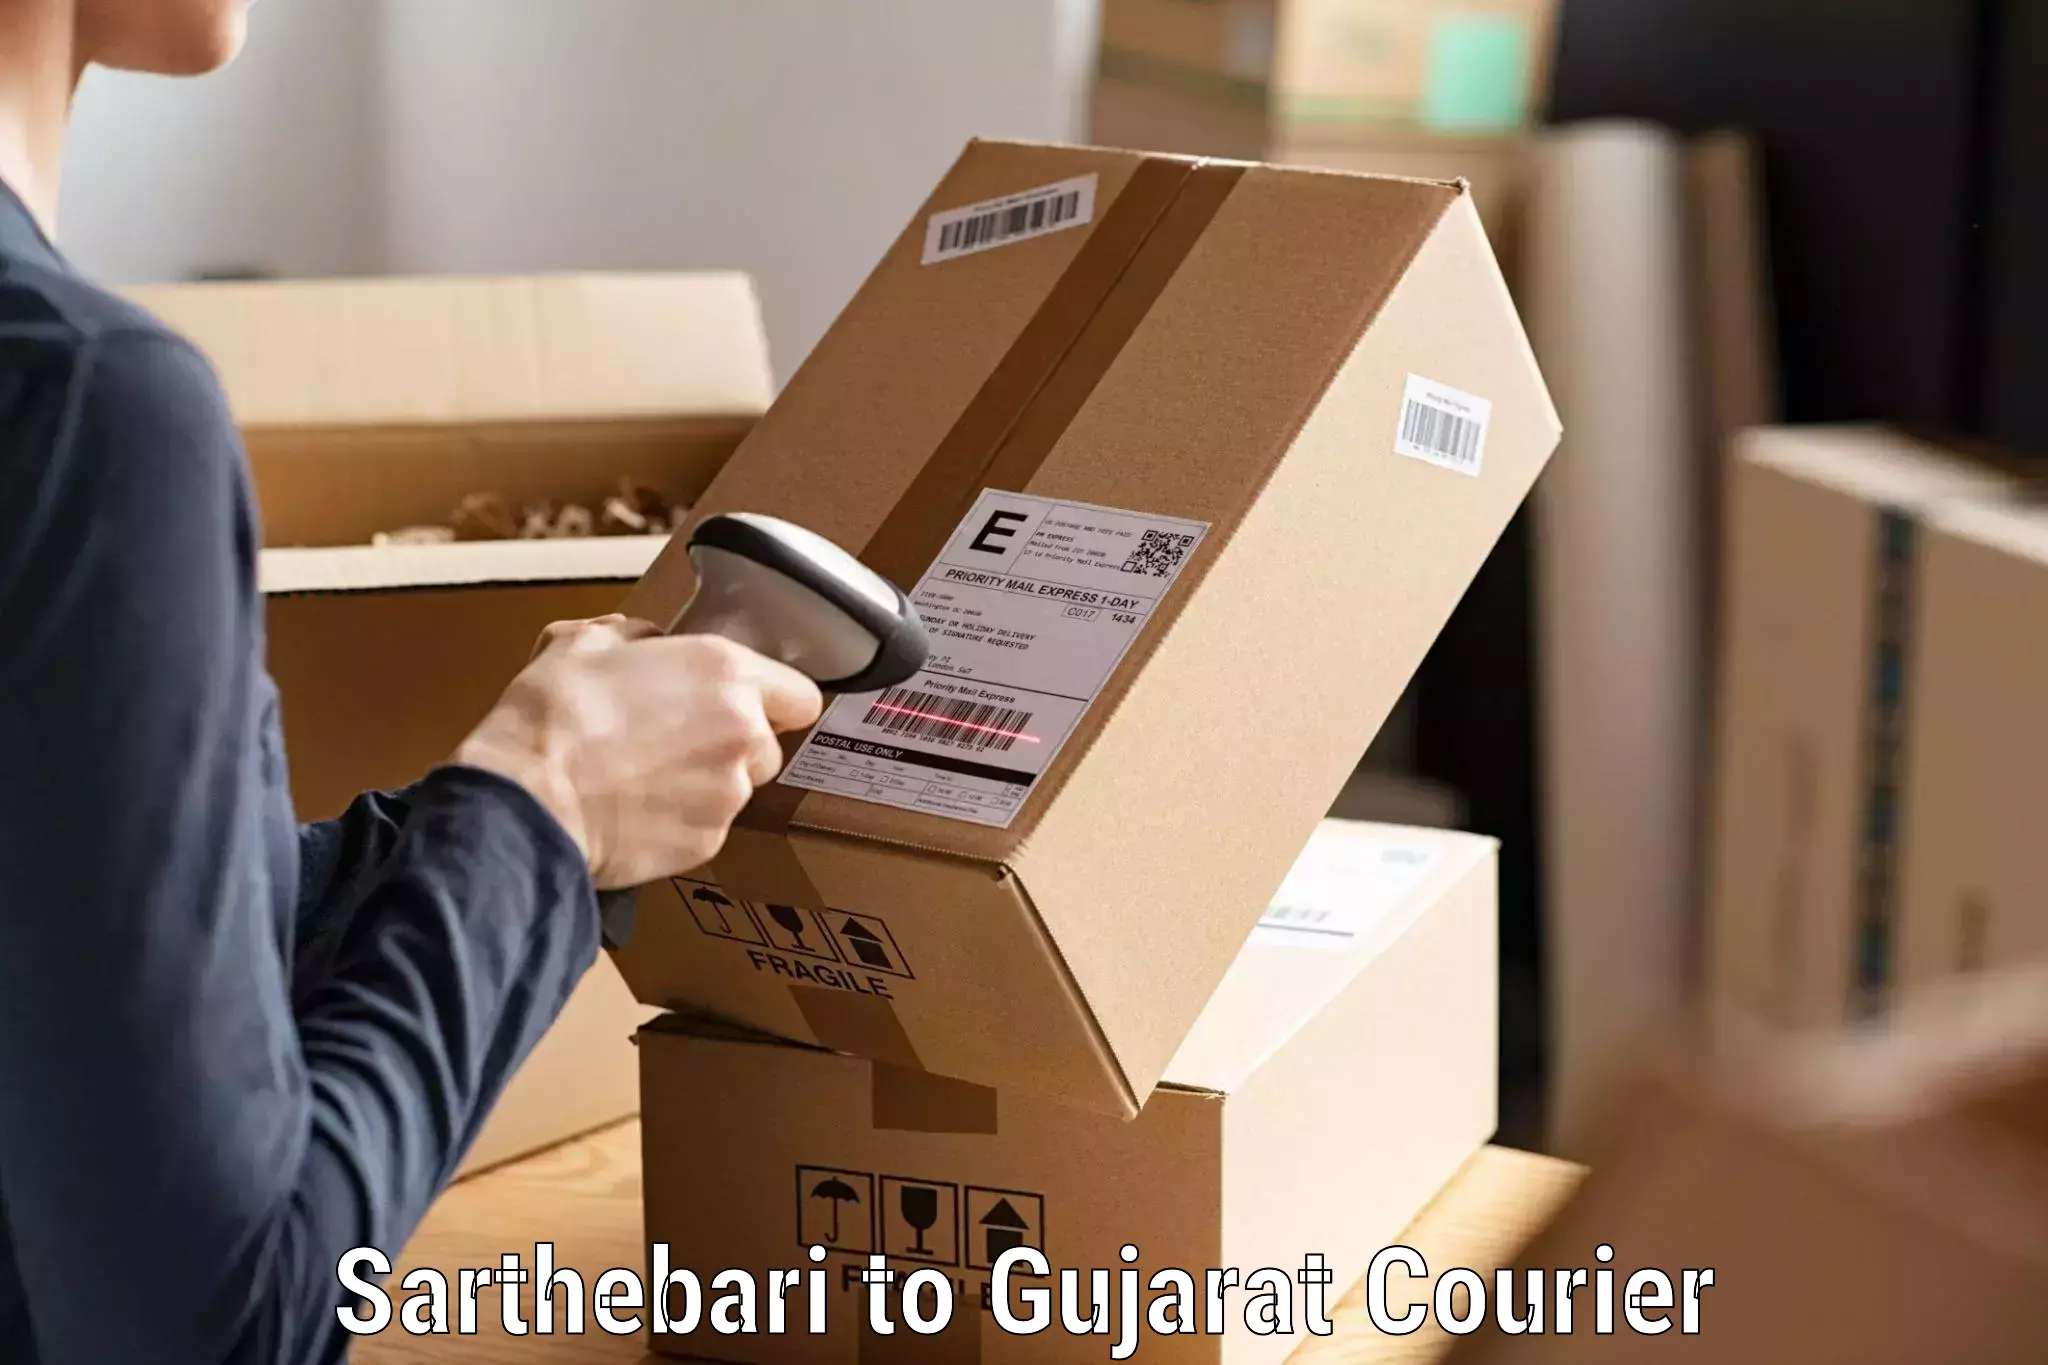 Customer-centric shipping Sarthebari to Gujarat